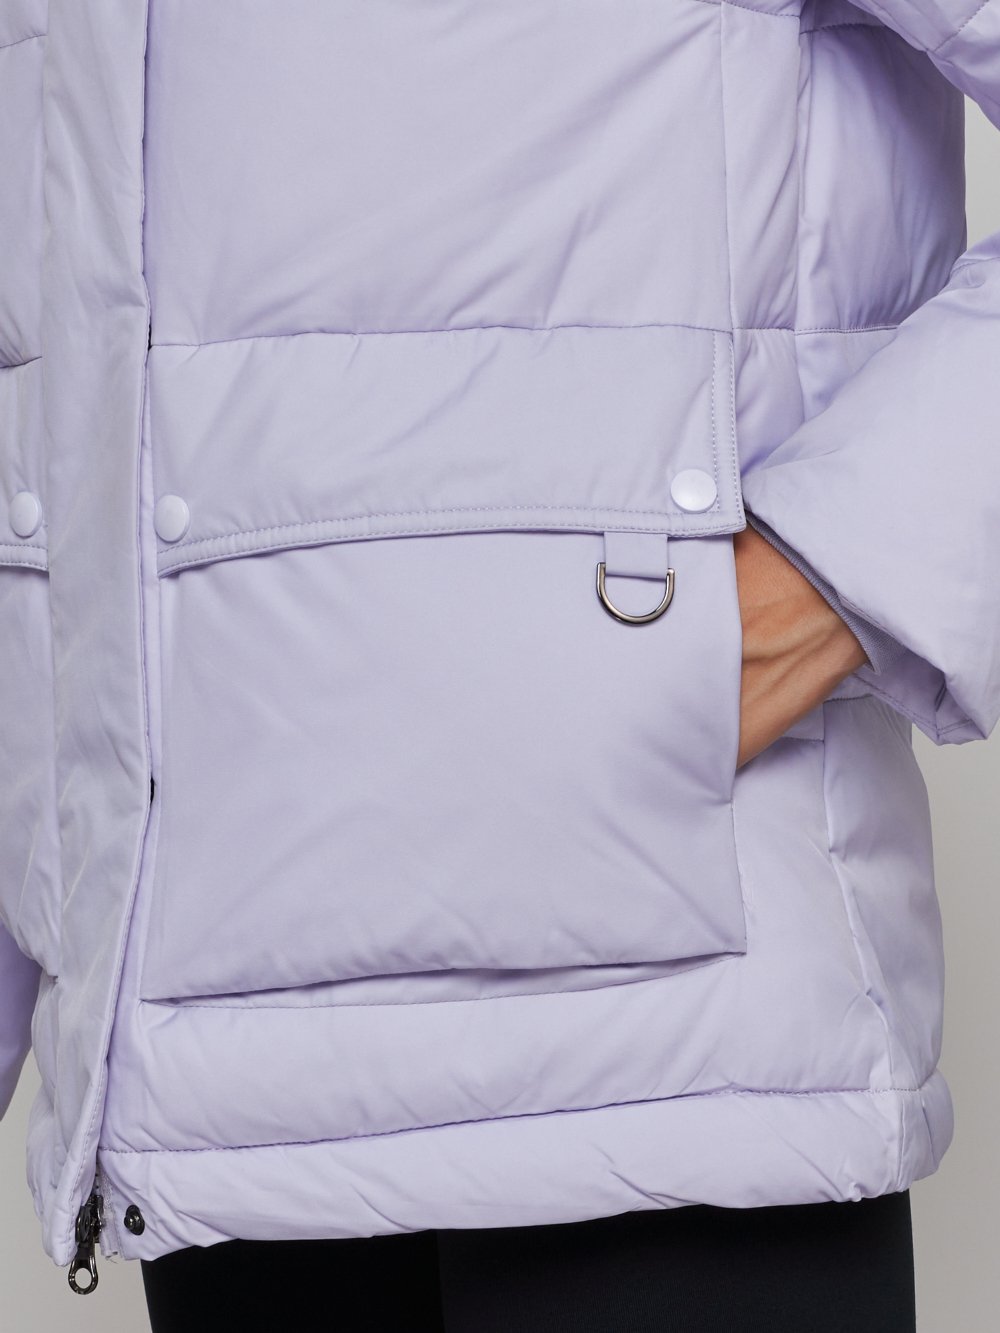 Купить куртку зимнюю оптом от производителя недорого в Москве 52303F 1